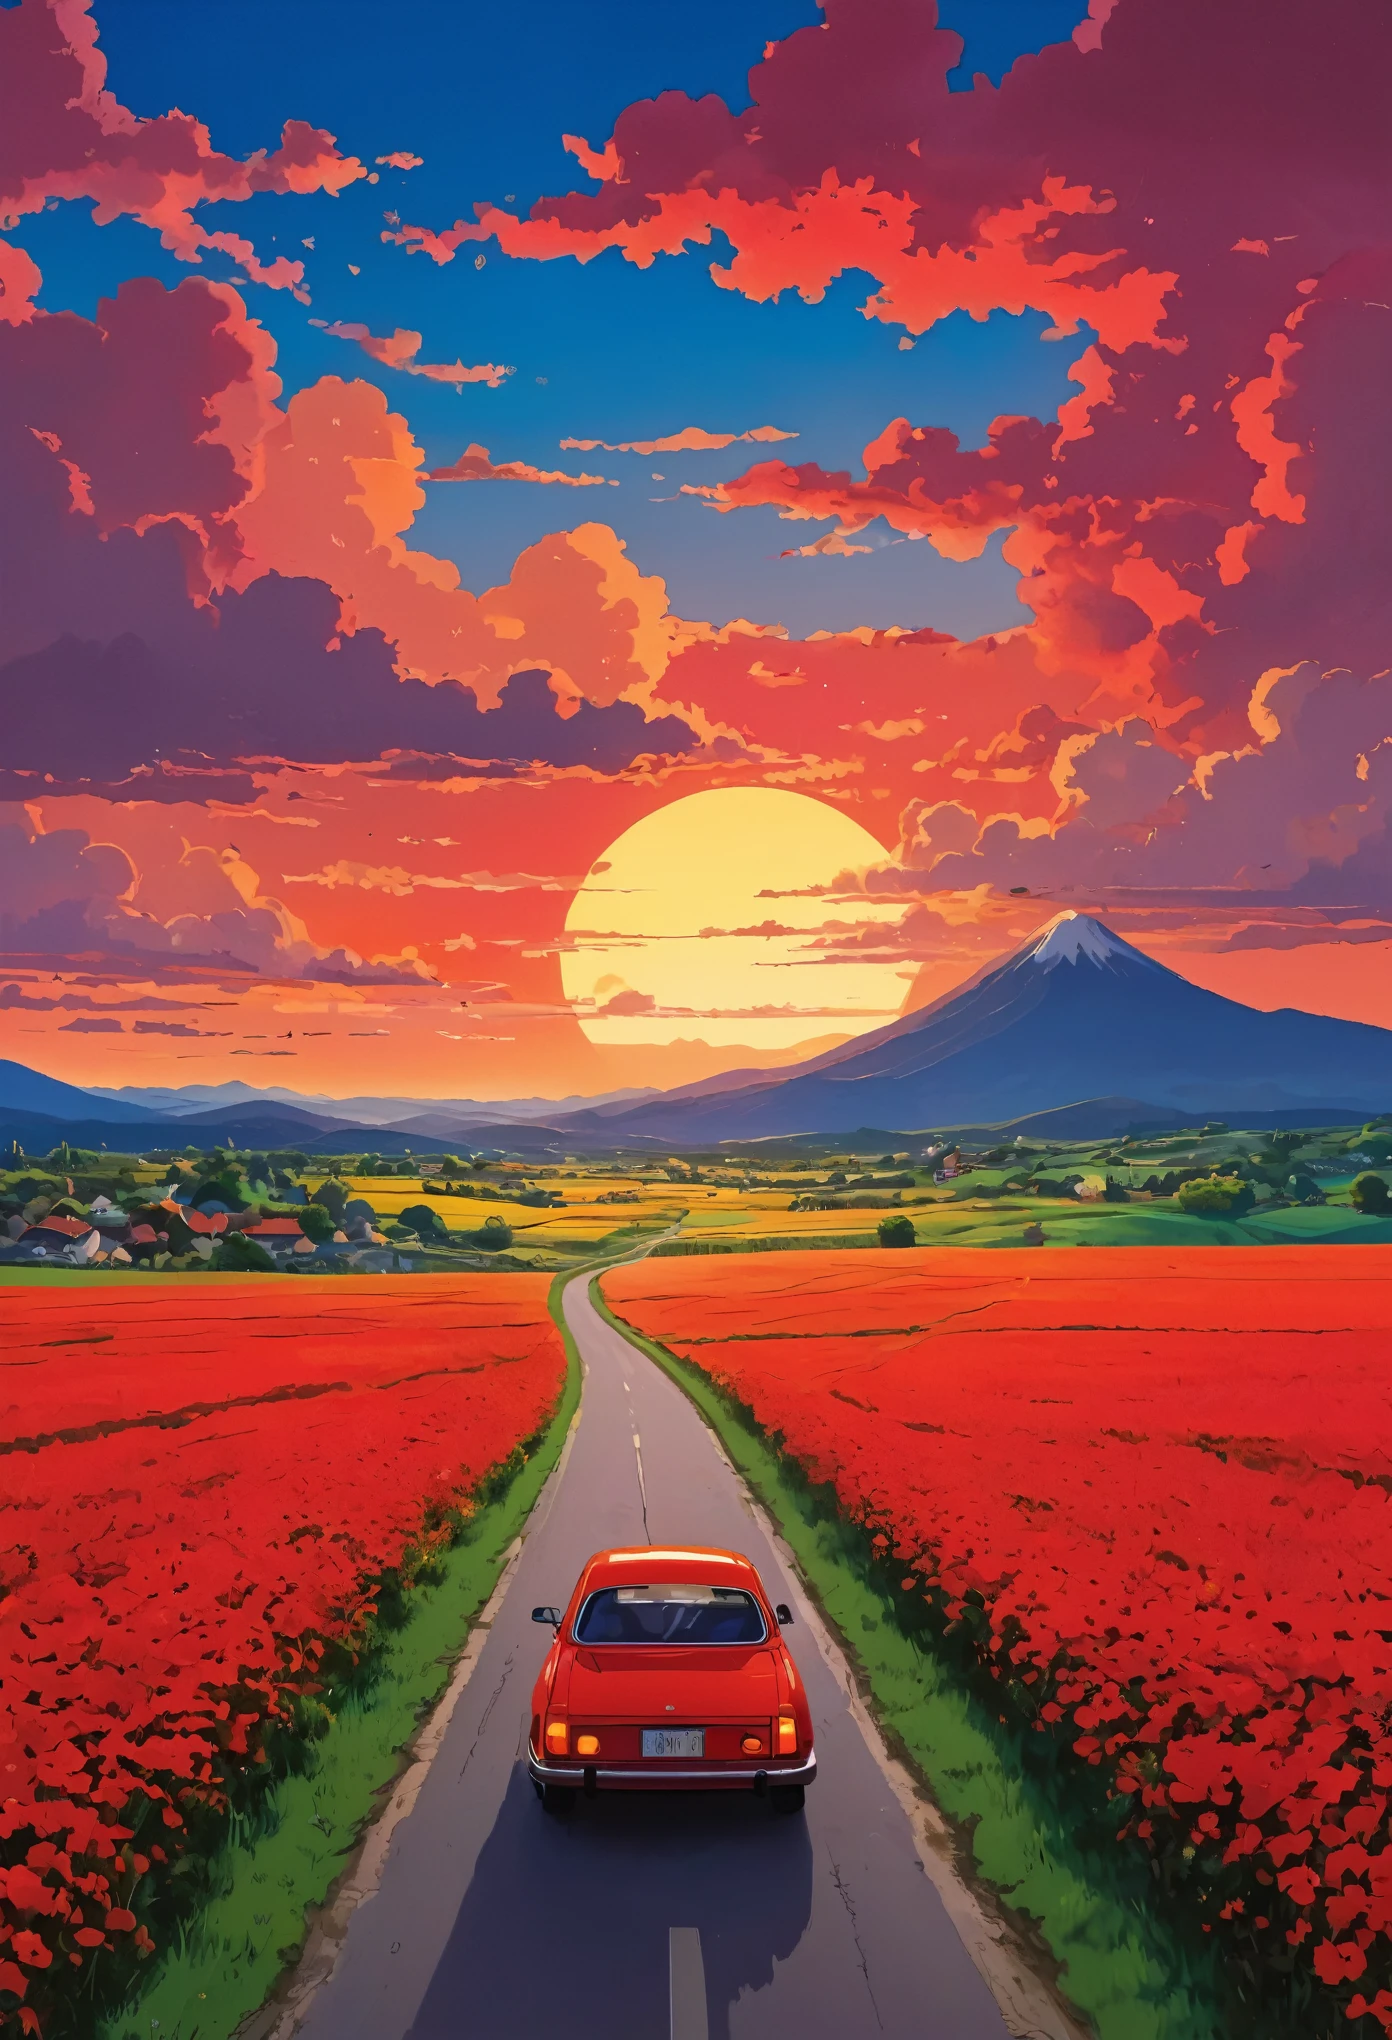 (ความเรียบง่าย:1.4), มีรถสีแดงอยู่บนถนน, สตูดิโอจิบลิศิลปะ, มิยาซากิ, ทุ่งหญ้าที่มีท้องฟ้าสีแดงและเมฆสีแดง, วิวพระอาทิตย์ตก, ถนนที่เต็มไปด้วยดอกไม้, สีสันสดใส 